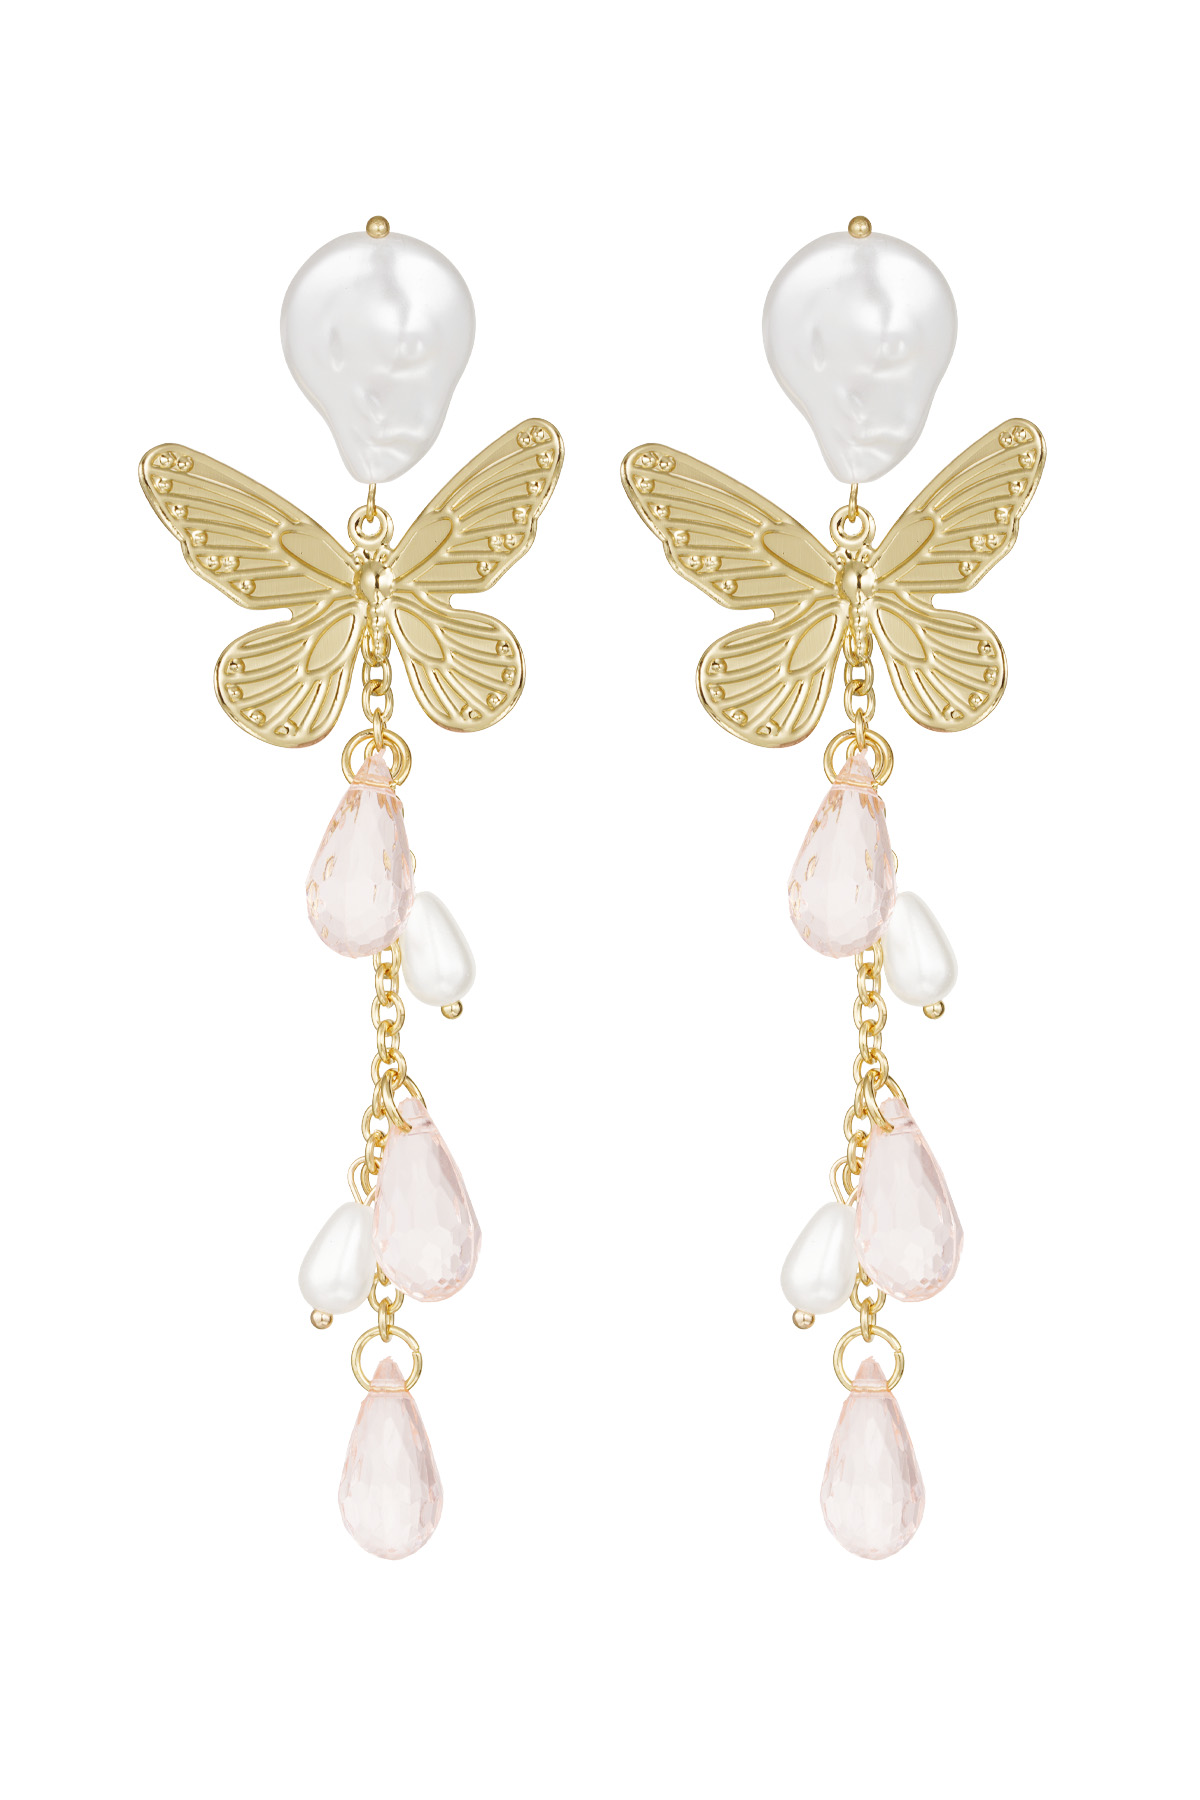 Butterfly earrings - pale pink